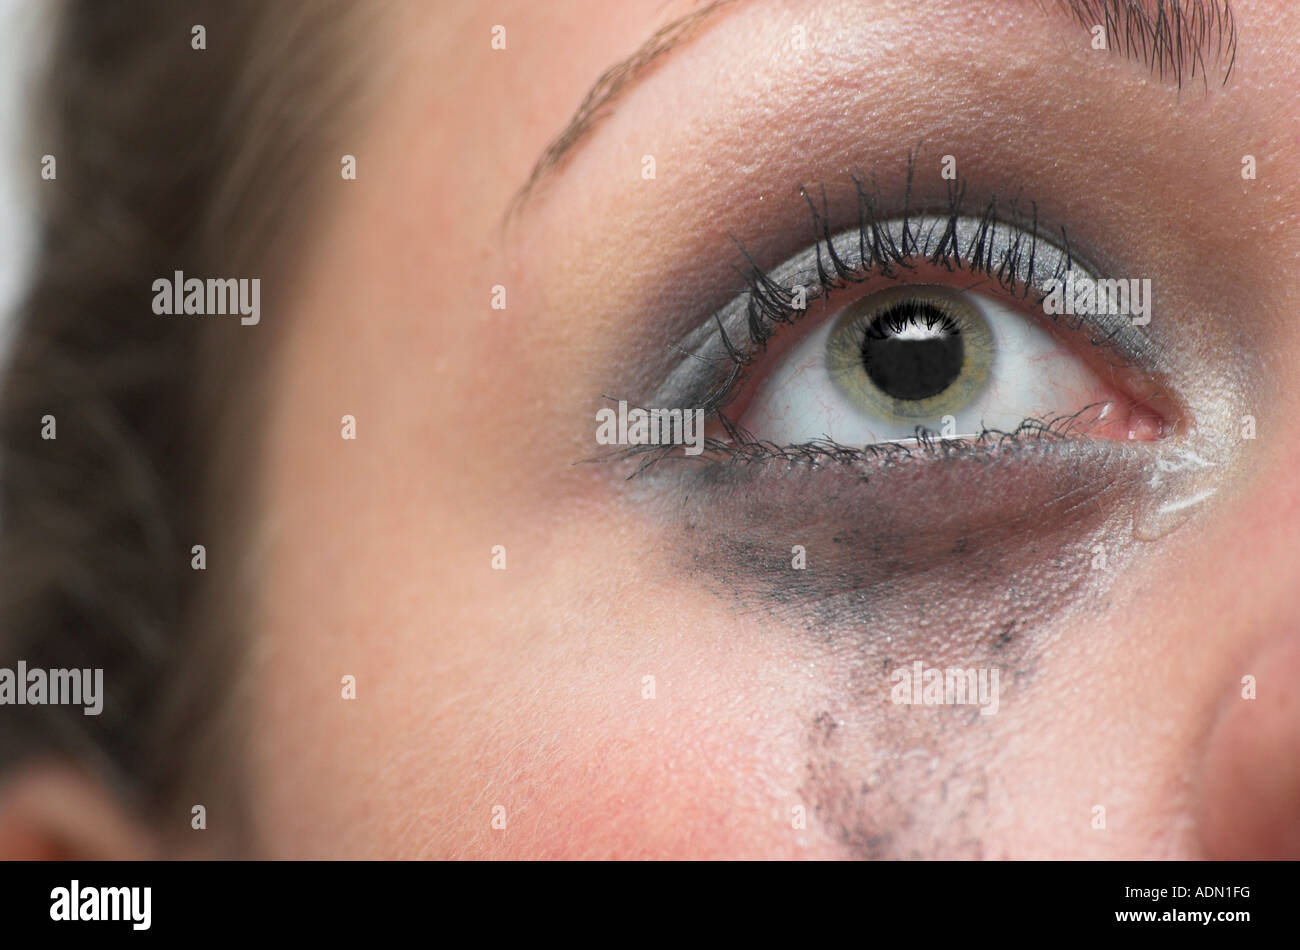 Junge Frau mit Augen-Make up Wange Träne im Augenwinkel liefen weinend hautnah Stockfoto